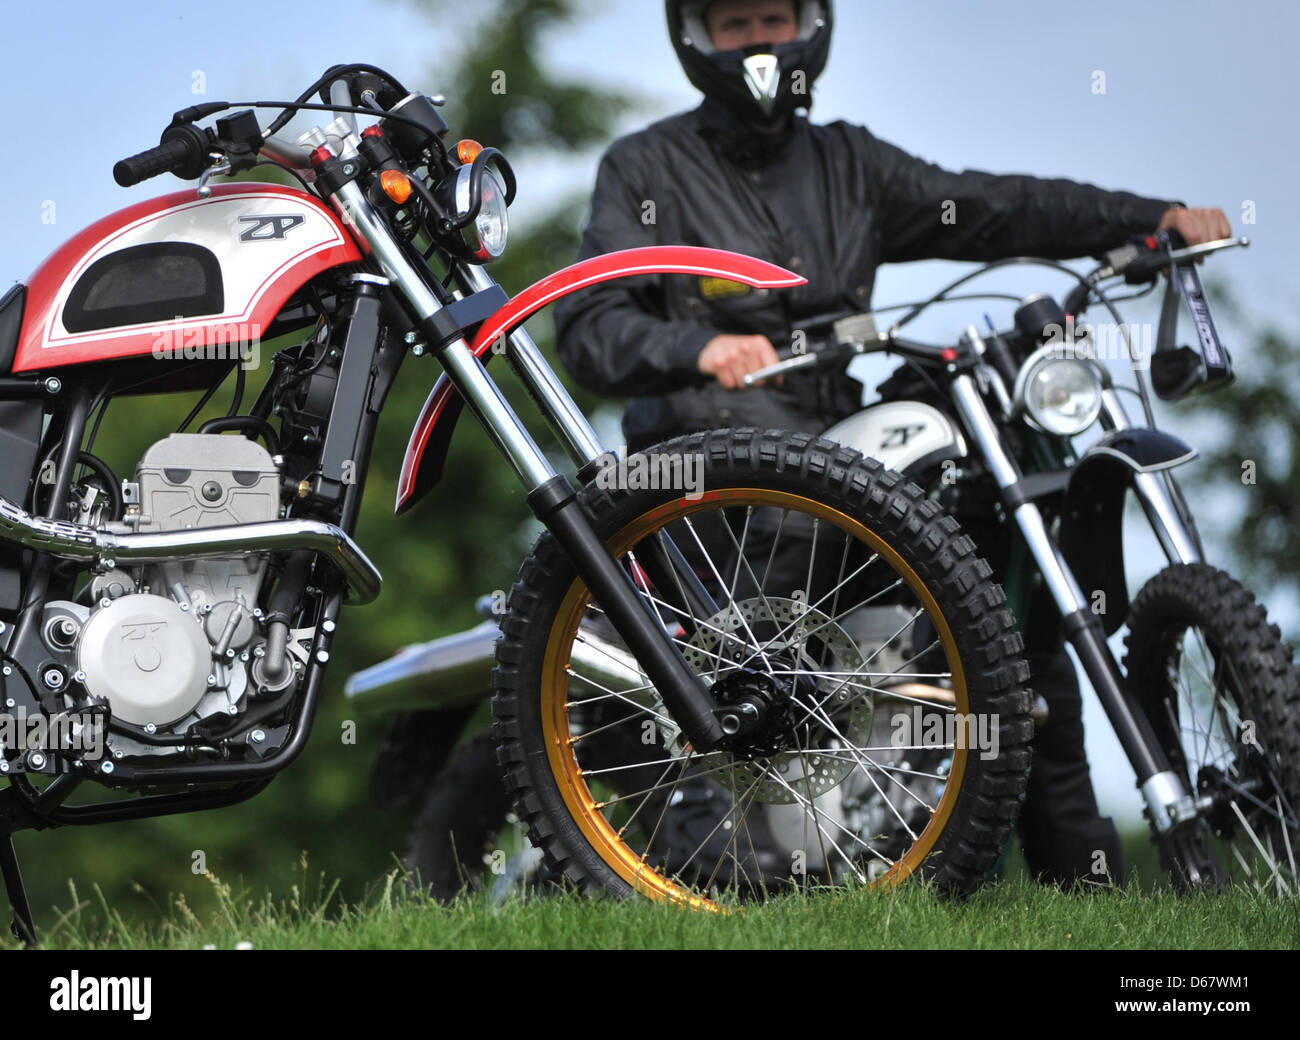 La société moto ZPmoto présente sa nouvelle moto hors route Zpsport449 à  Zschopau, Allemagne, 29 juin 2012. La mise en production de la moto est  prévue pour septembre. Photo : Hendrik Schmidt